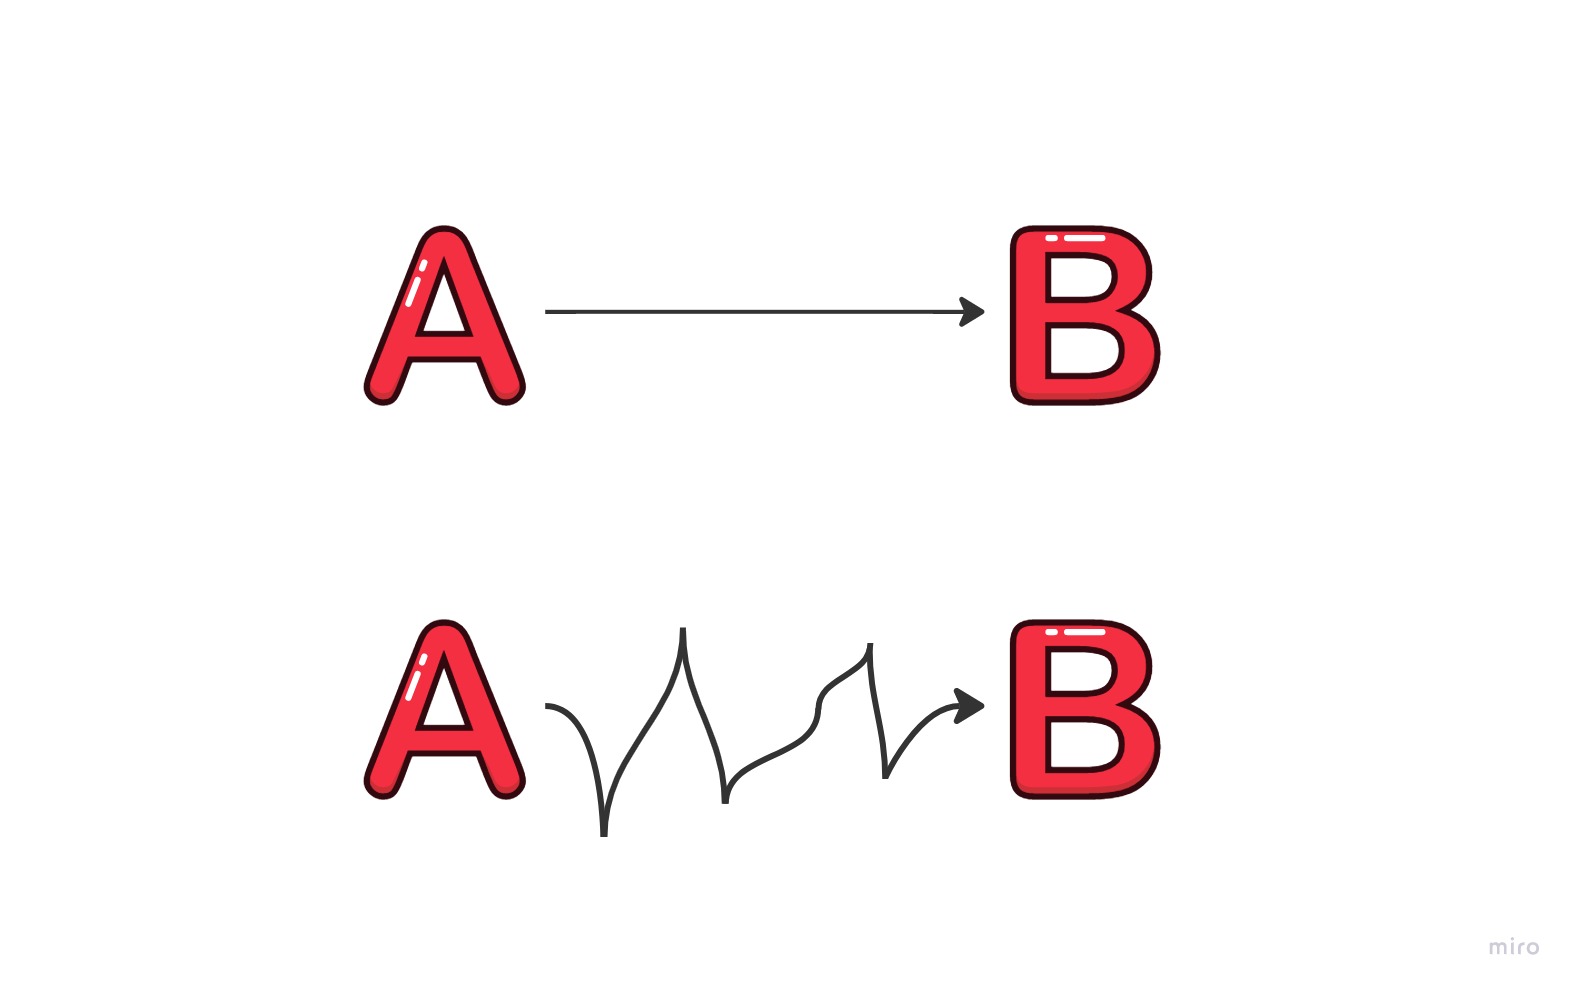 Duas possibilidades de caminhos entre um ponto A e um ponto B. Um caminho é uma reta, simbolizando o menor caminho, e o outro são várias linhas tortas, simbolizando o maior caminho.